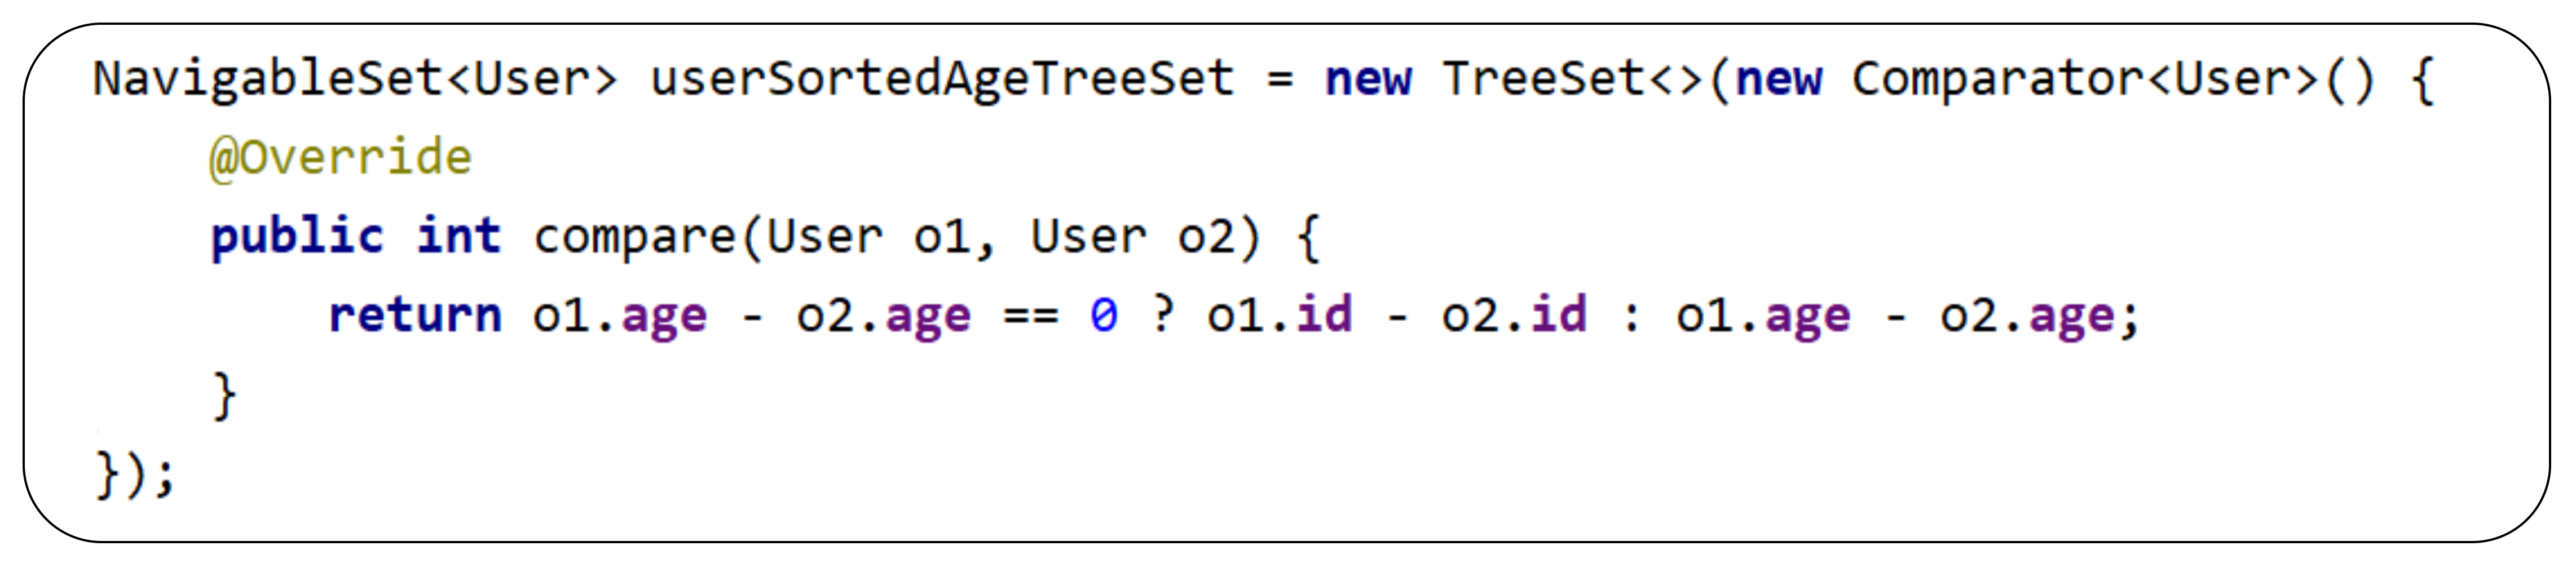 TreeSet examples